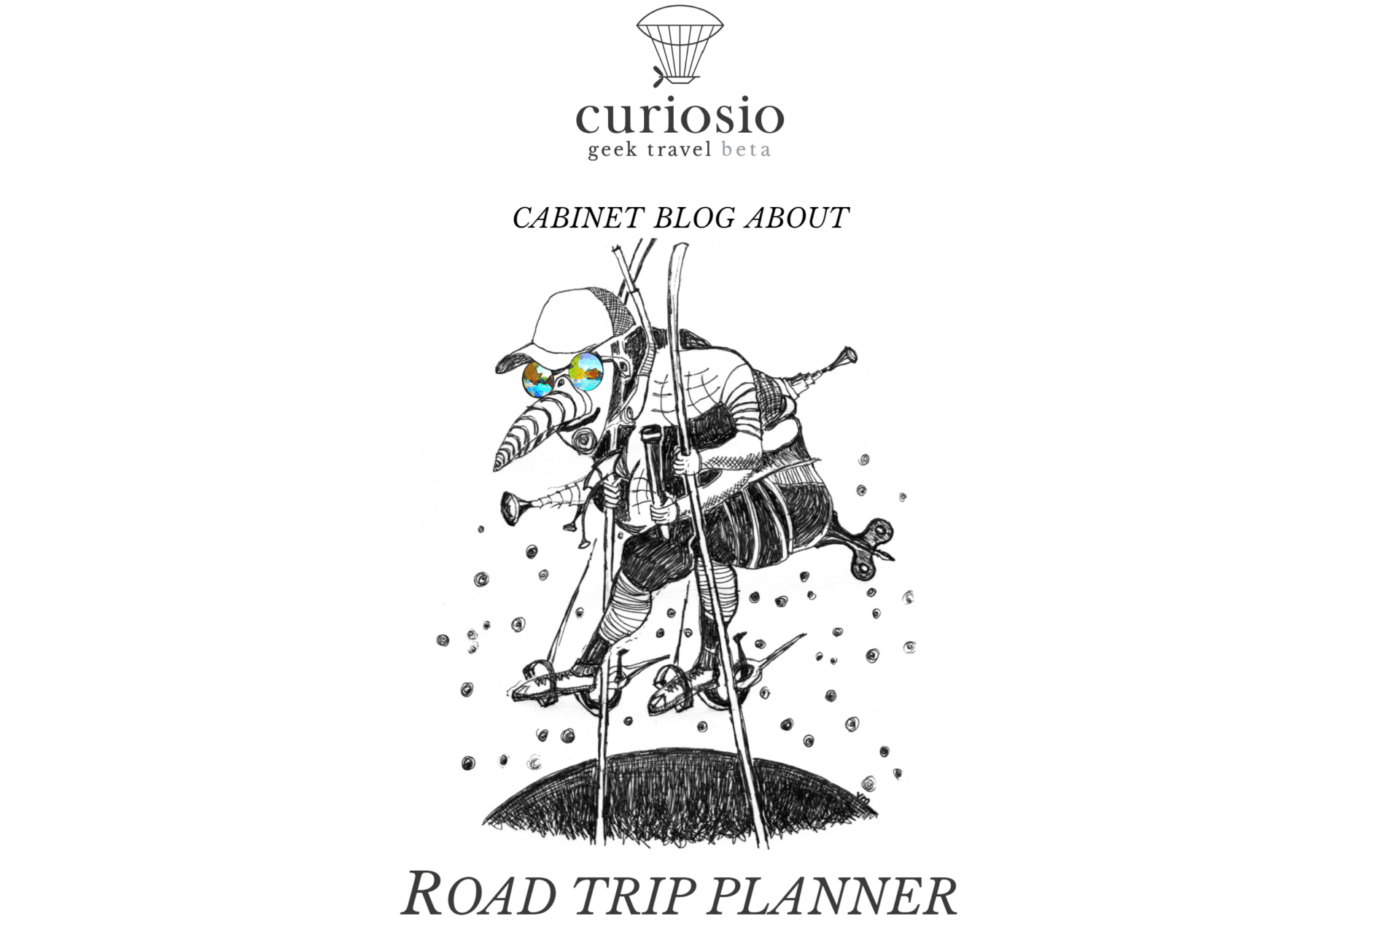 Curiosio road trip planner